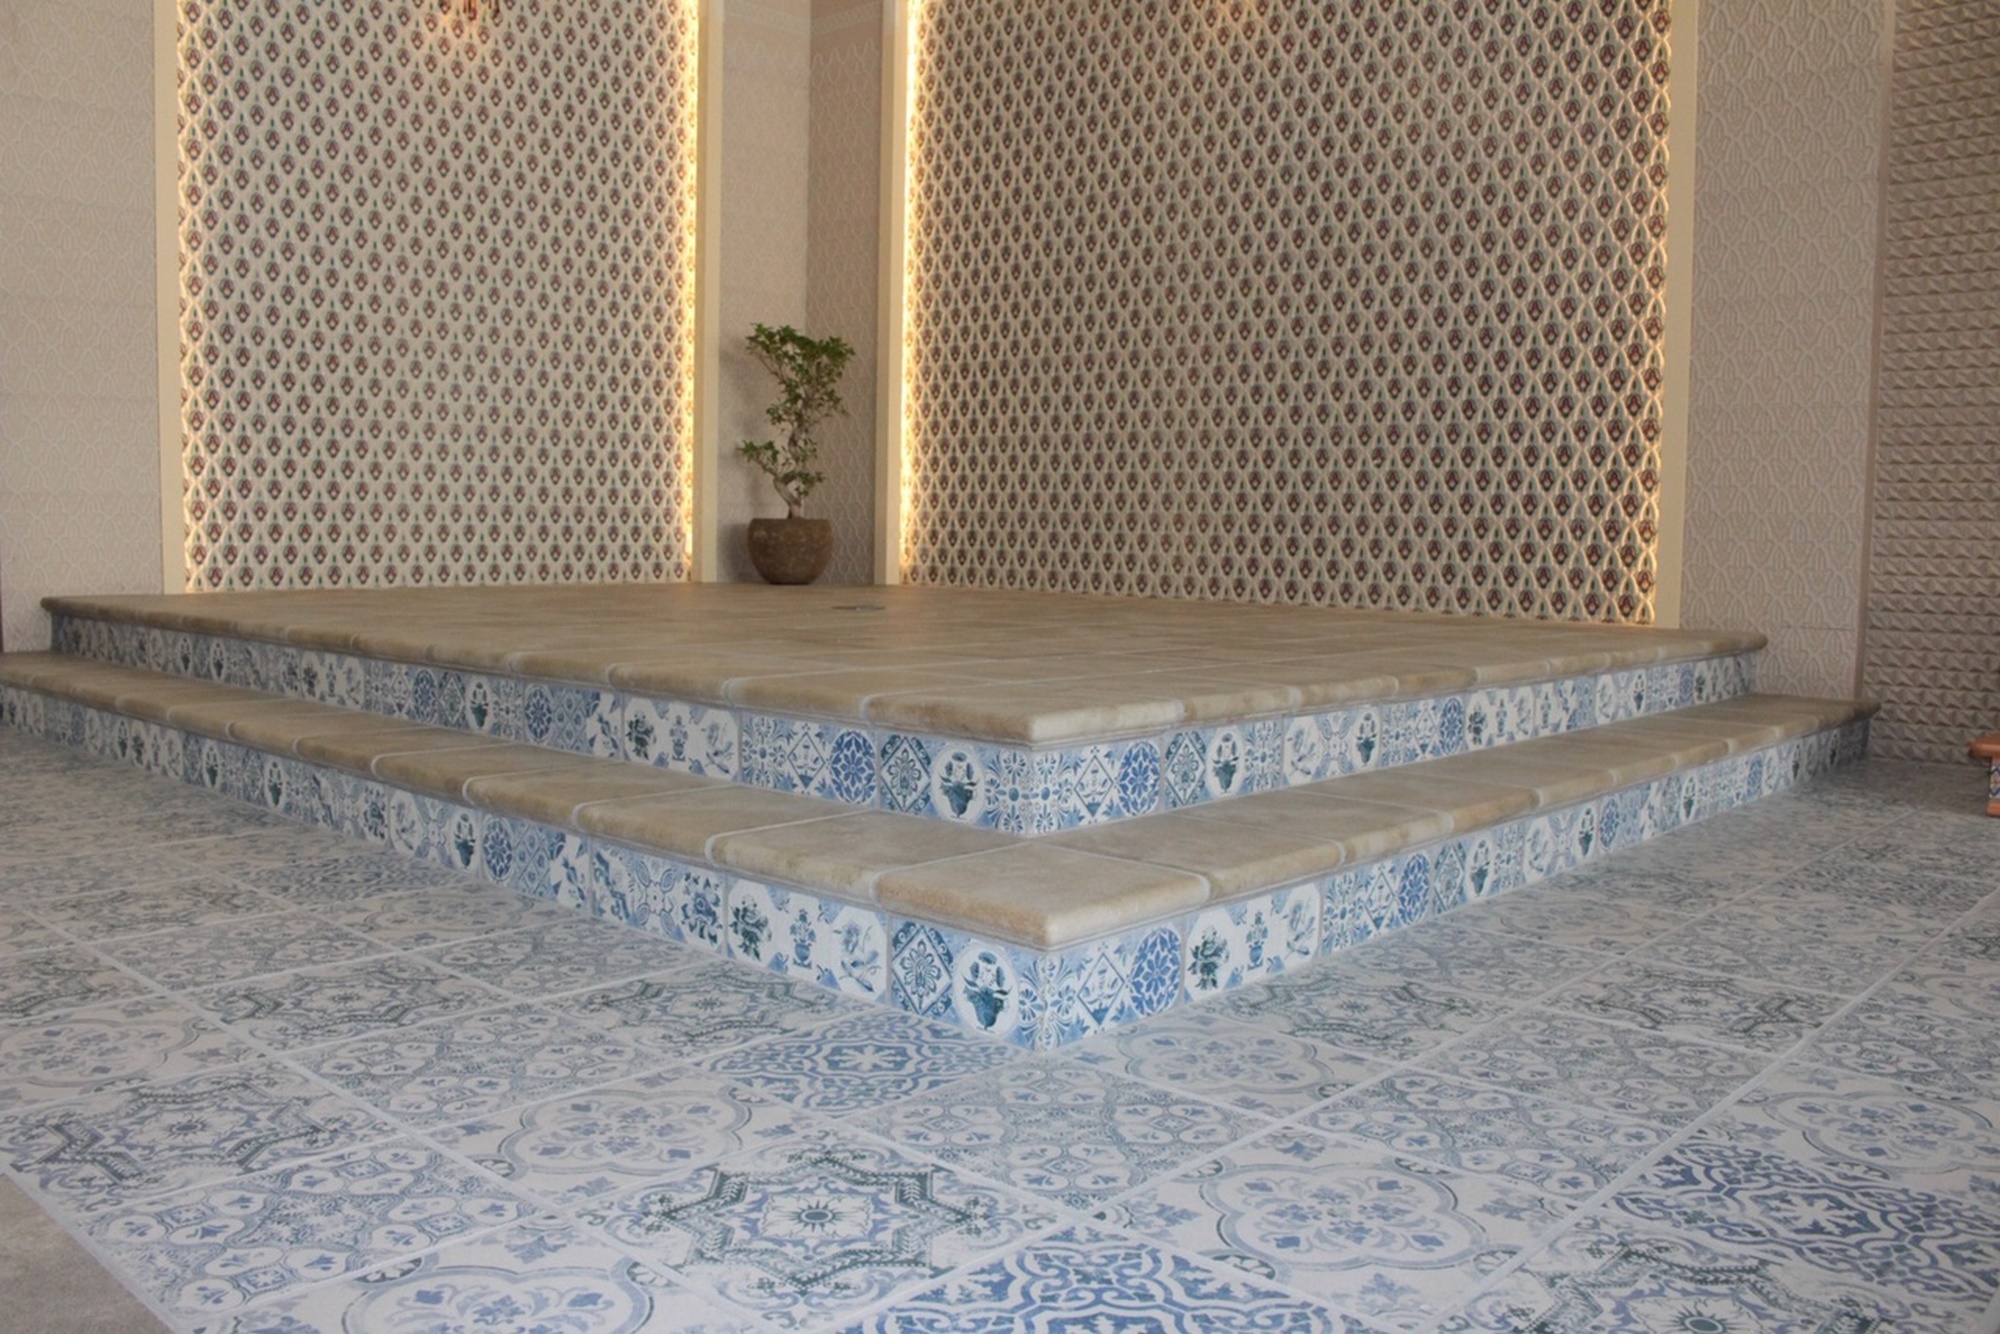 Pavimento y tabica retro azul columbia beige - Escaleras